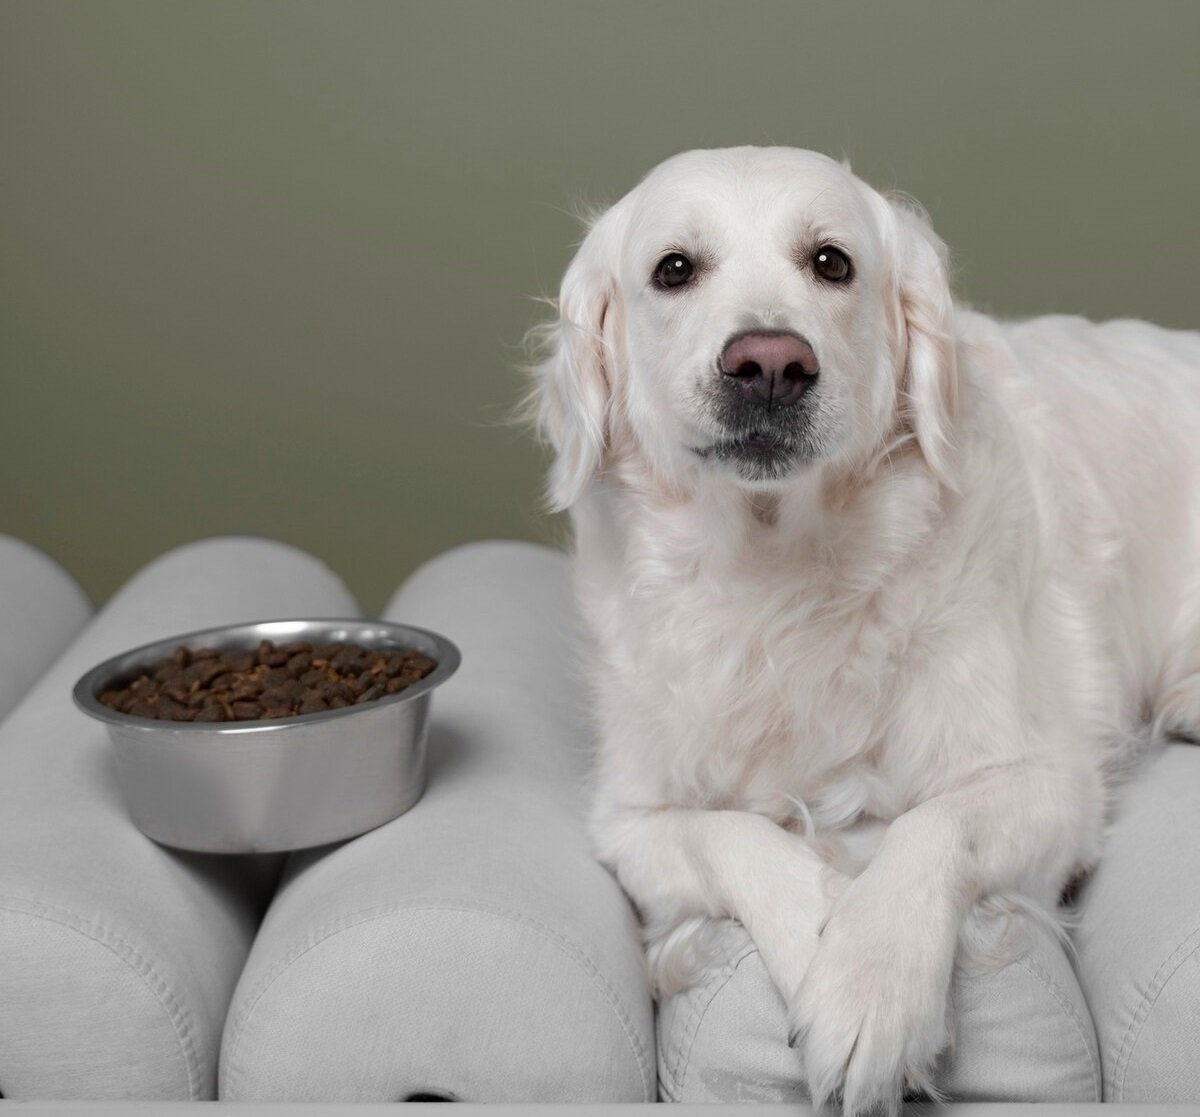 Perros y hábitos alimentarios: ¿Quizás preferiría comer algo más en lugar de comida seca?